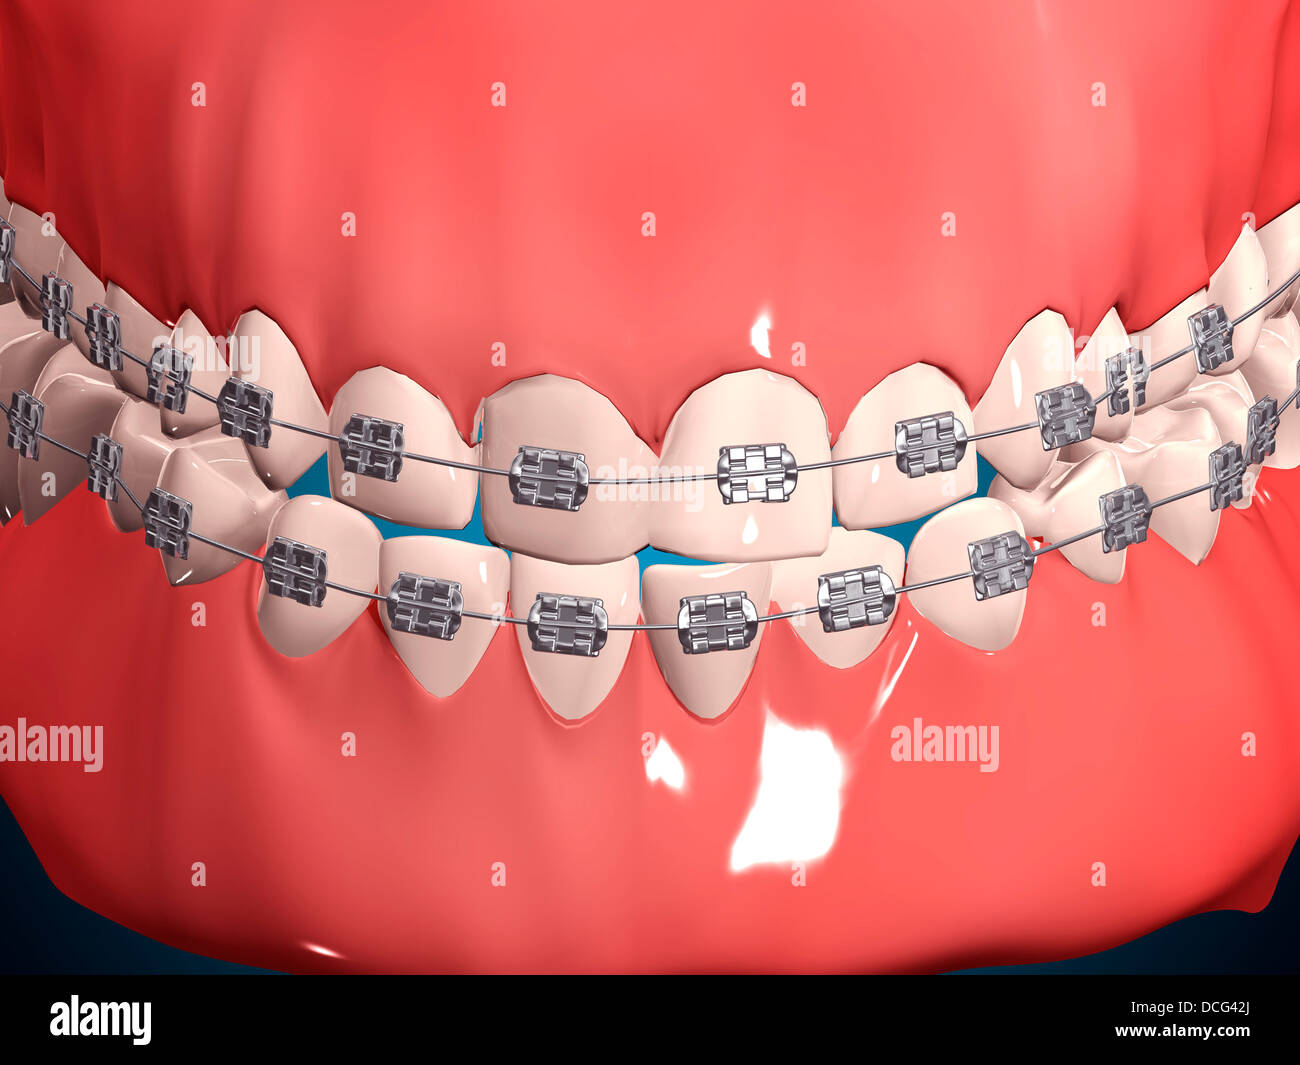 Medizinische Illustration der menschliche Mund zeigt Zähne, Zahnfleisch und Metall-Klammern. Stockfoto